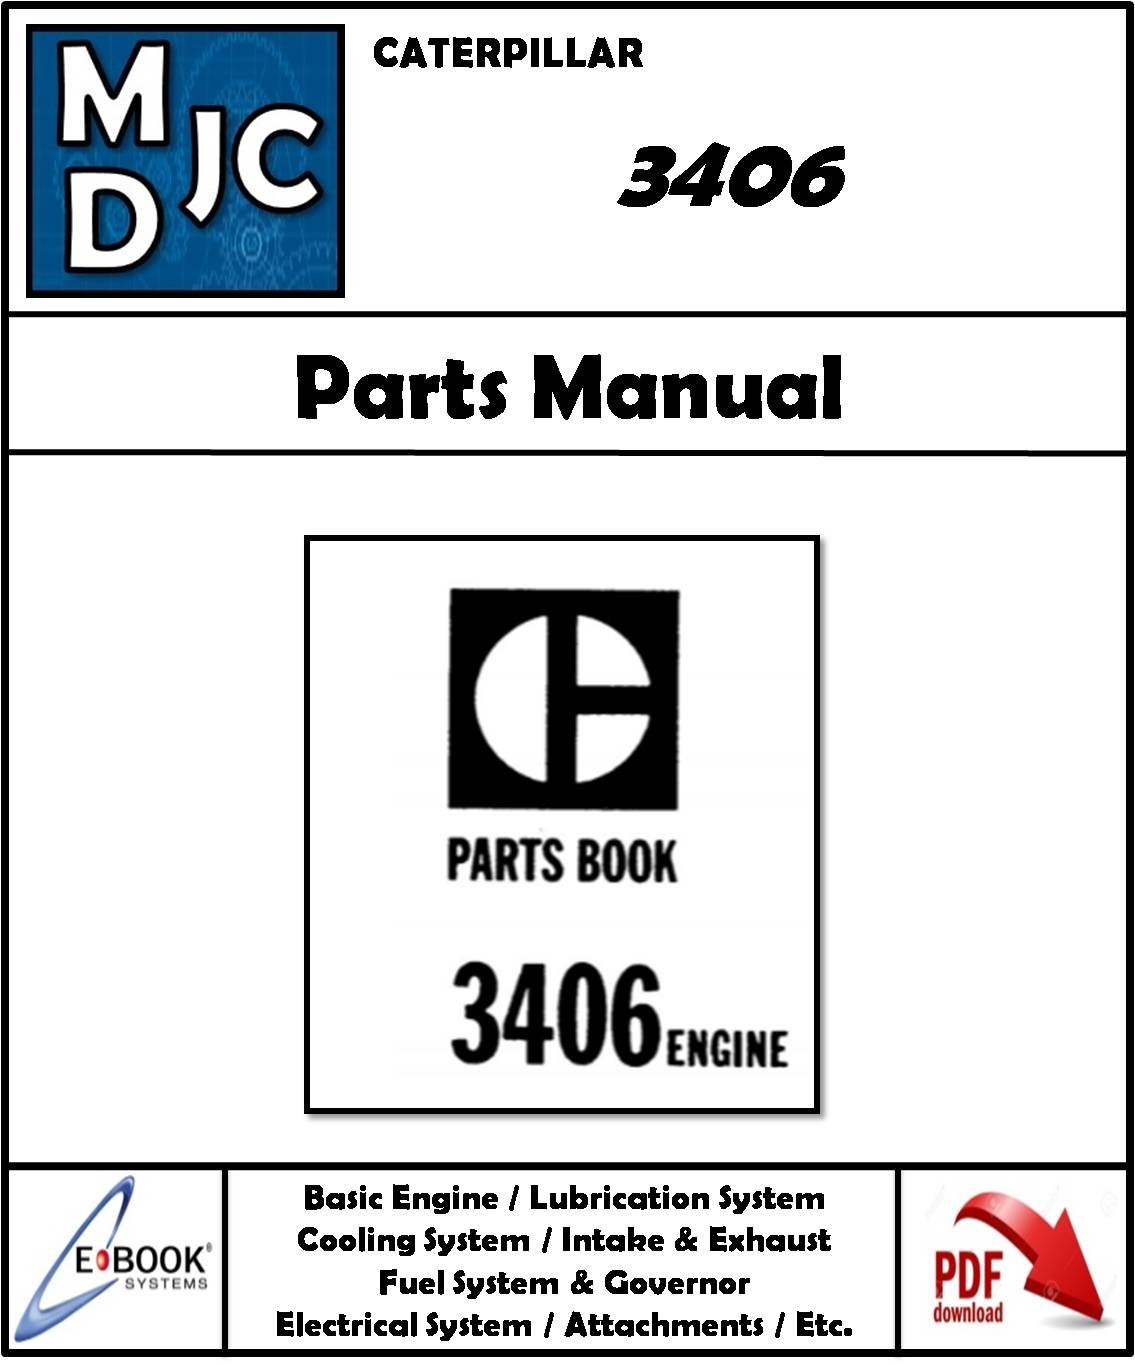 Catalogo de Partes Motor Caterpillar  3406